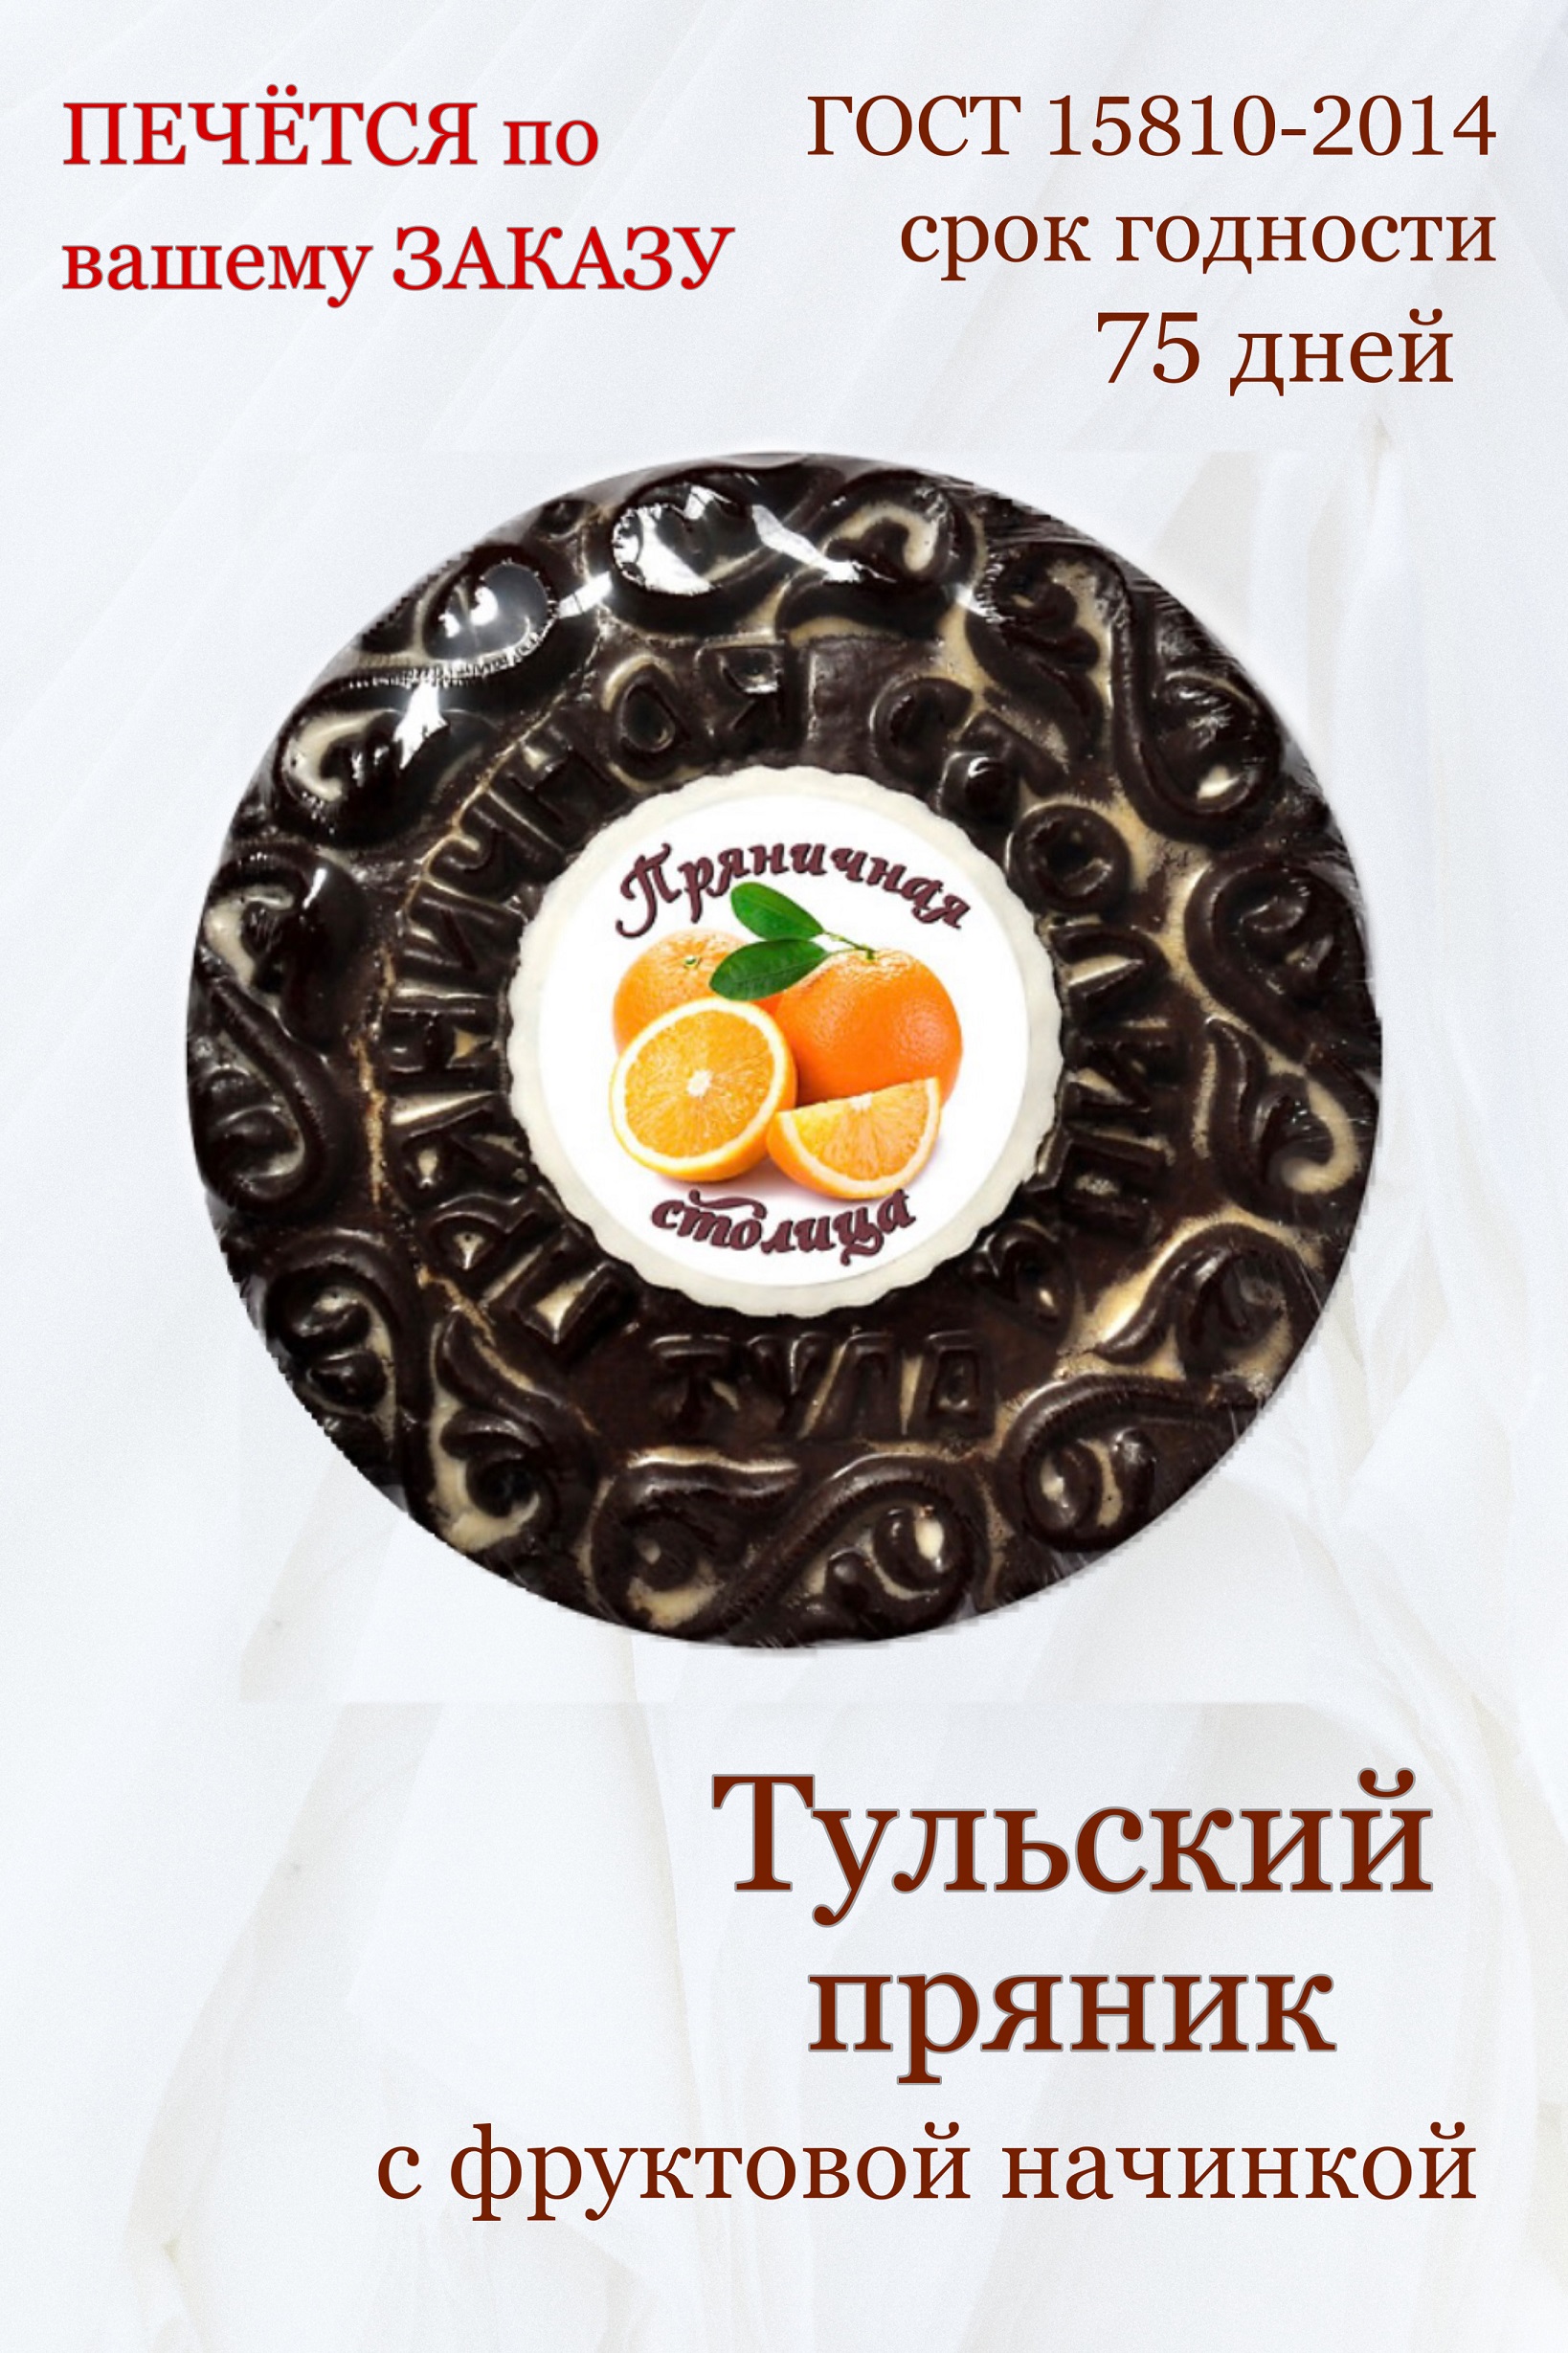 Пряники глазированные Пряничная столица шоколадные с начинкой со вкусом апельсина, 700 г